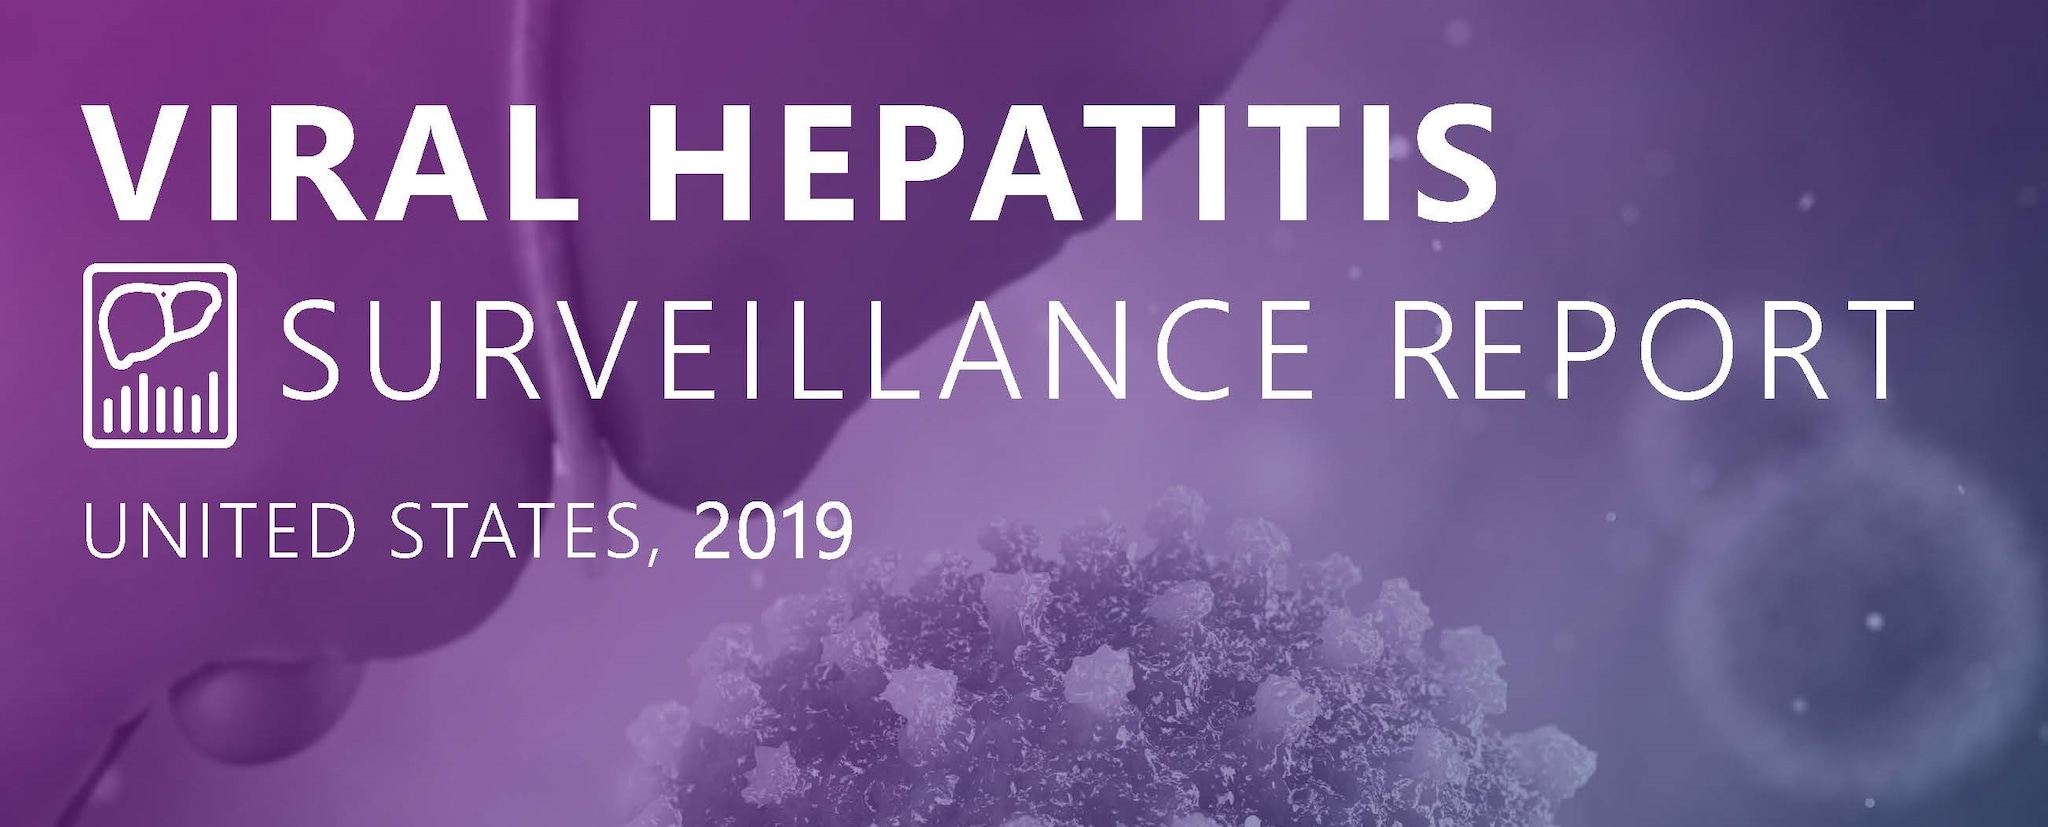 2019 Viral Hepatitis Surveillance Report